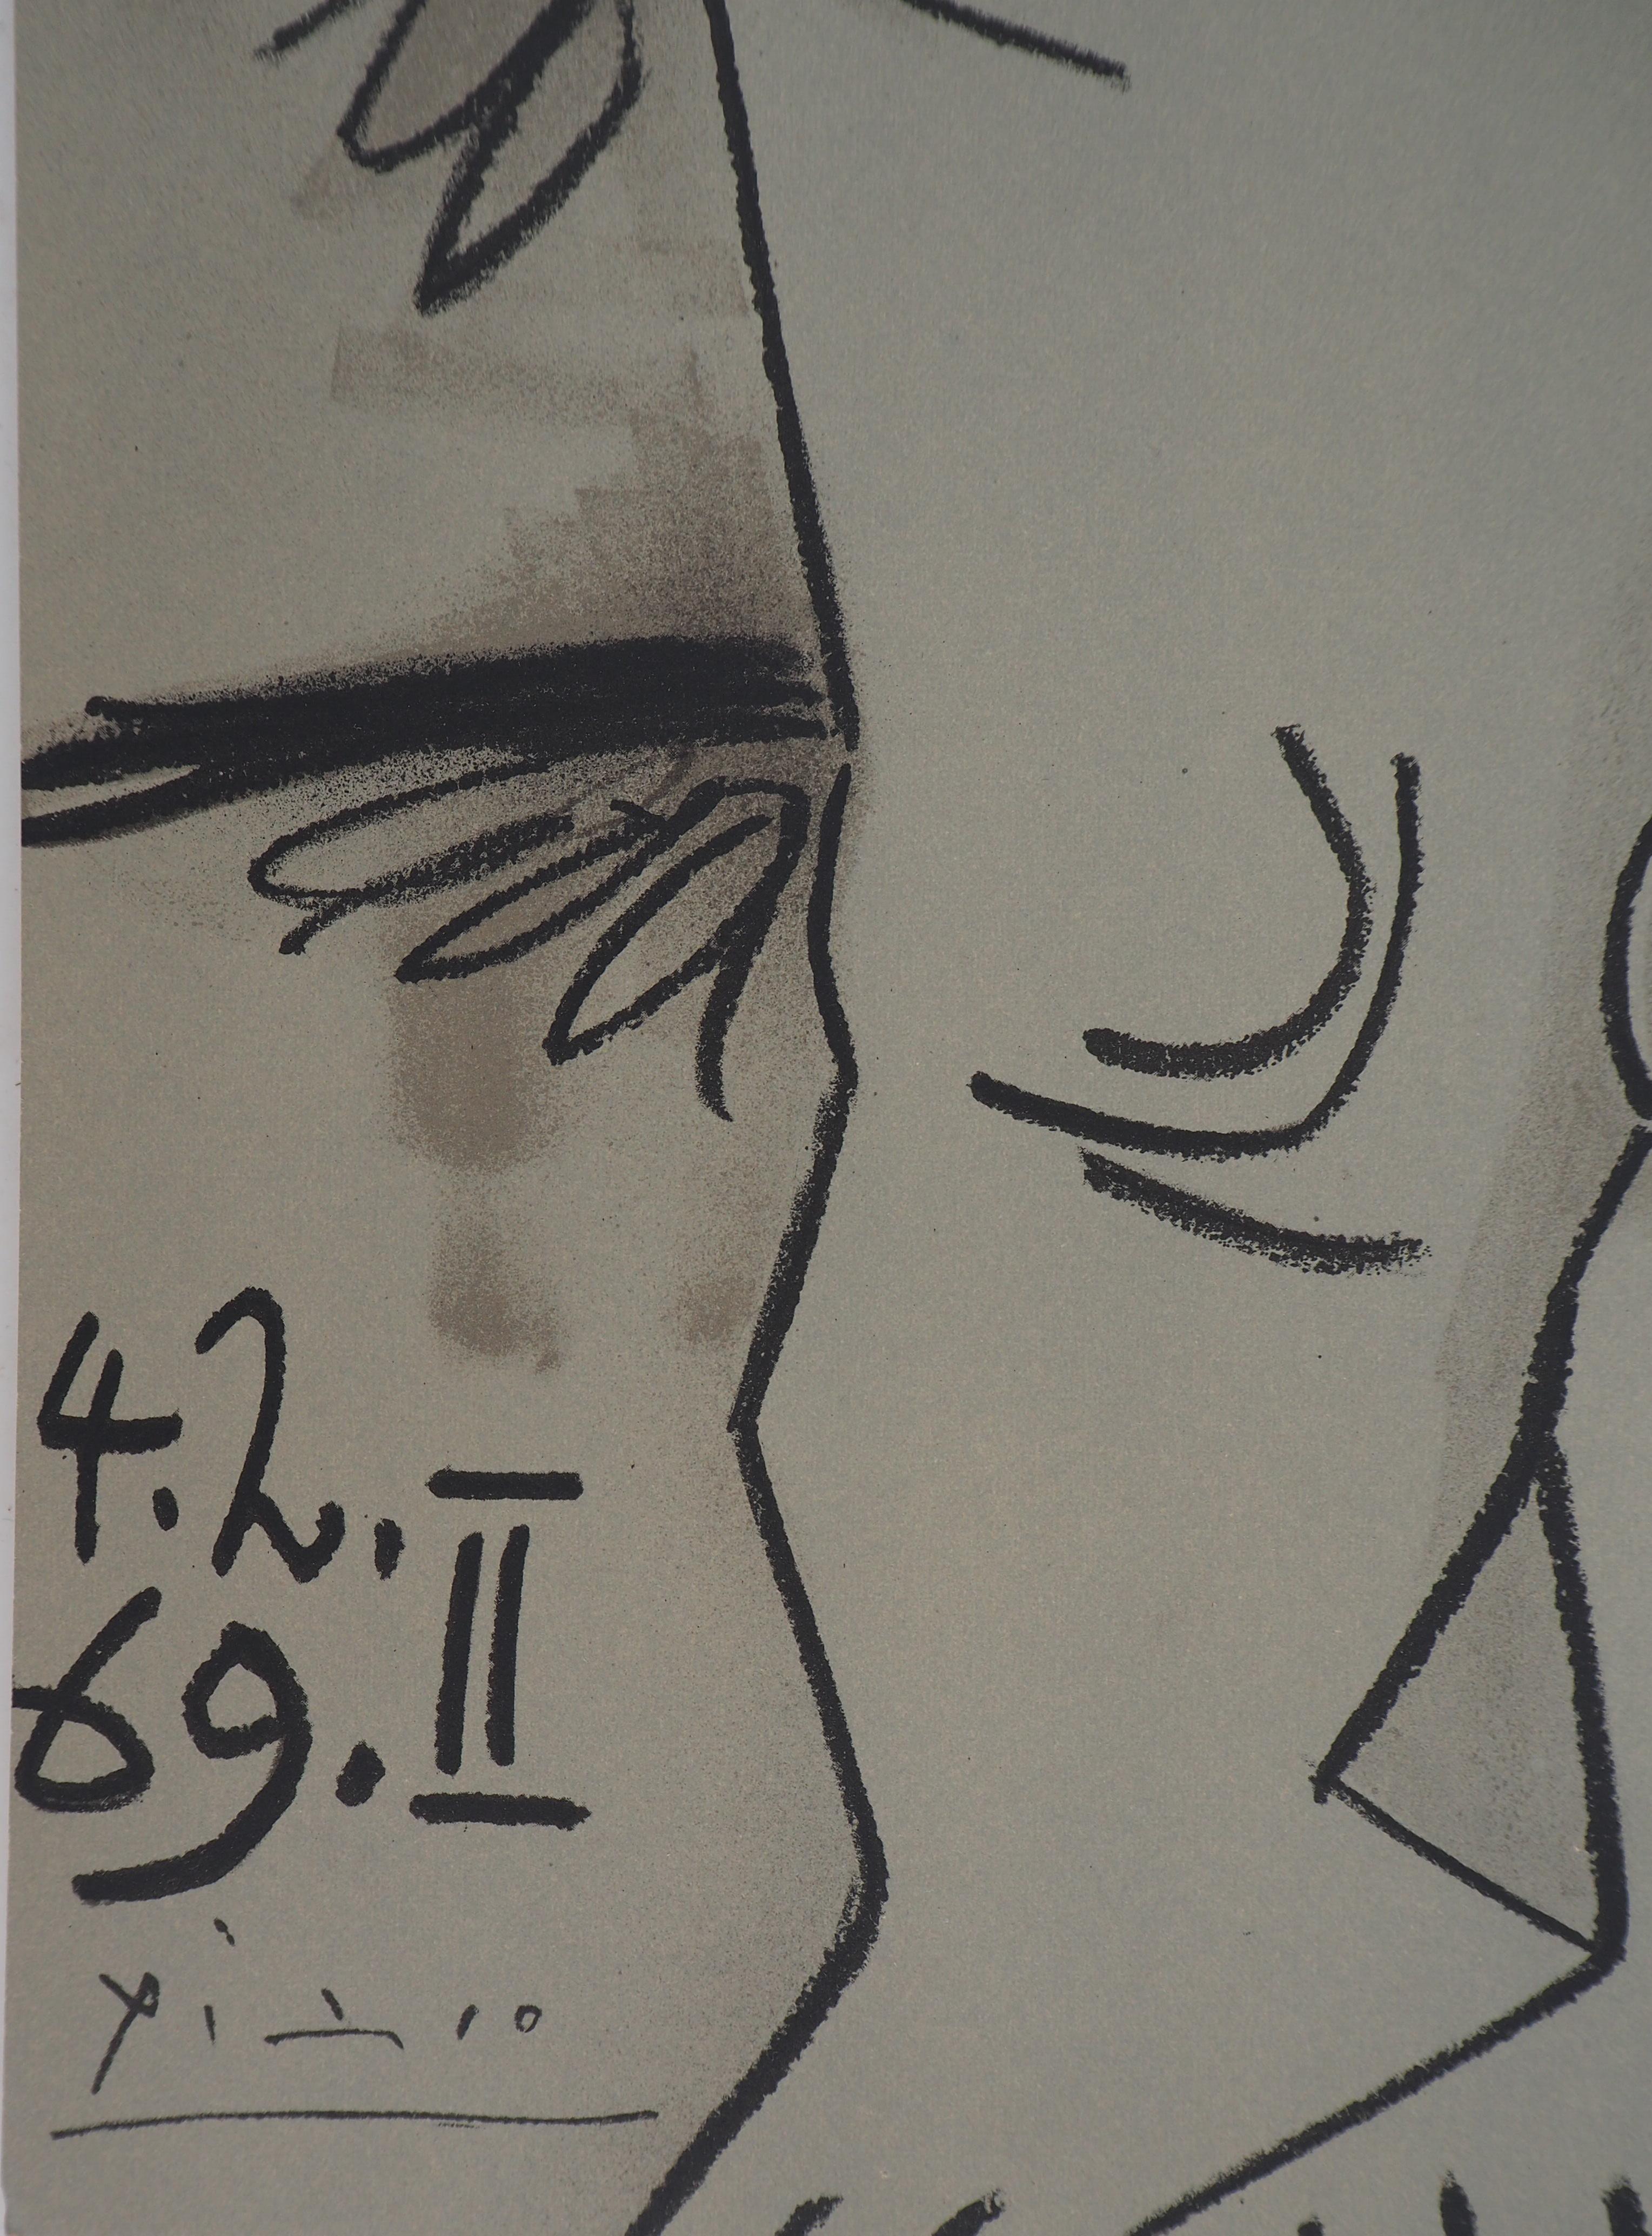 Modell und Maler – Lithographie (Mourlot 1971) – Print von Pablo Picasso